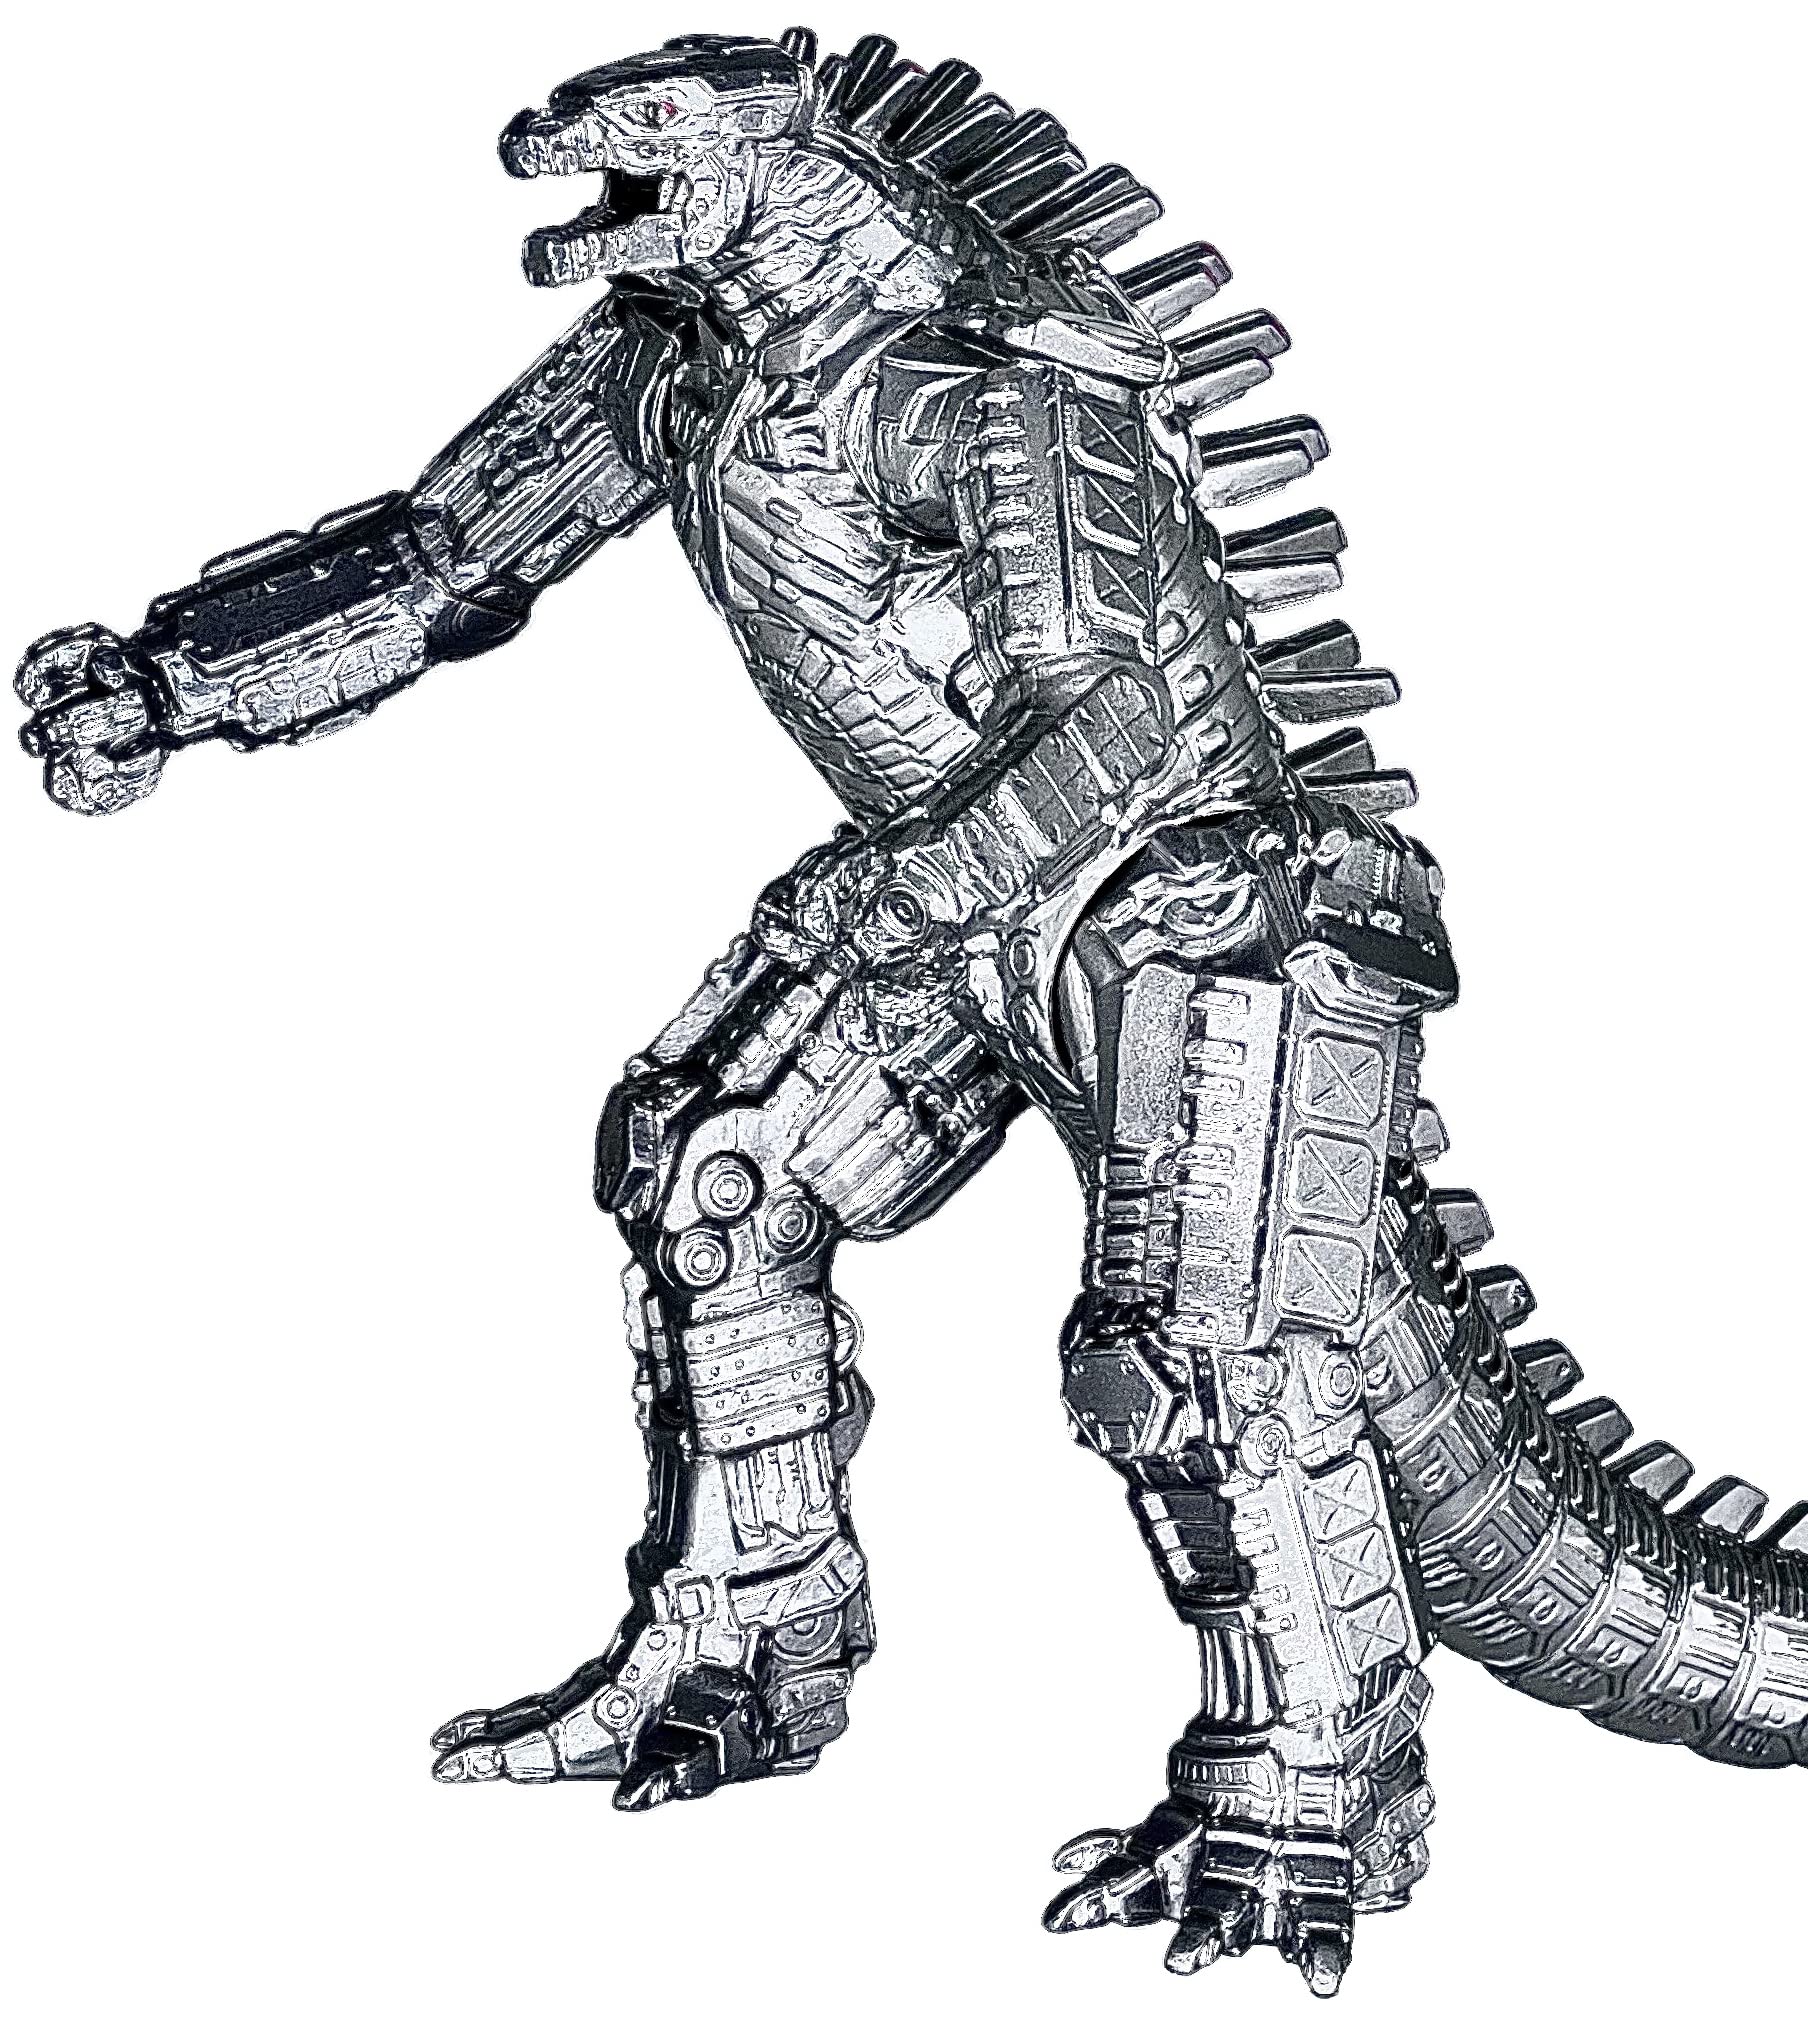 MechaGodzilla - phiên bản nâng cấp của siêu quái vật Godzilla, đã trở lại với một bộ giáp đầy mạnh mẽ và uy lực. Mời các fan hâm mộ của Godzilla thưởng thức những trận chiến liều lĩnh và đầy kịch tính của MechaGodzilla, đối đầu với những đối thủ đáng gờm trên màn ảnh rộng.